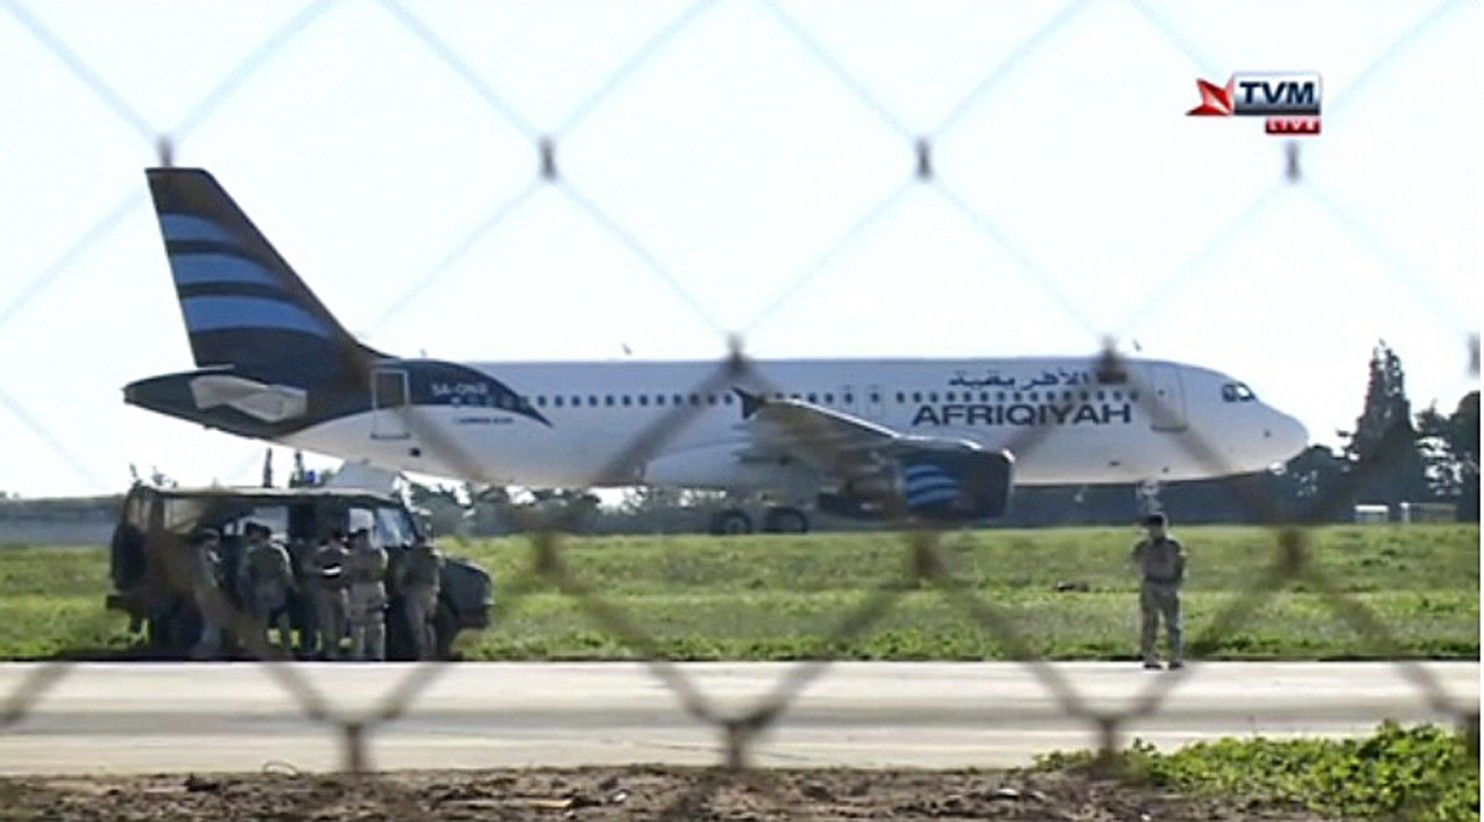 माल्टा के प्रधानमंत्री जोसेफ मस्कट ने बताया लीबिया का अपहृत विमान माल्टा में उतारा गया